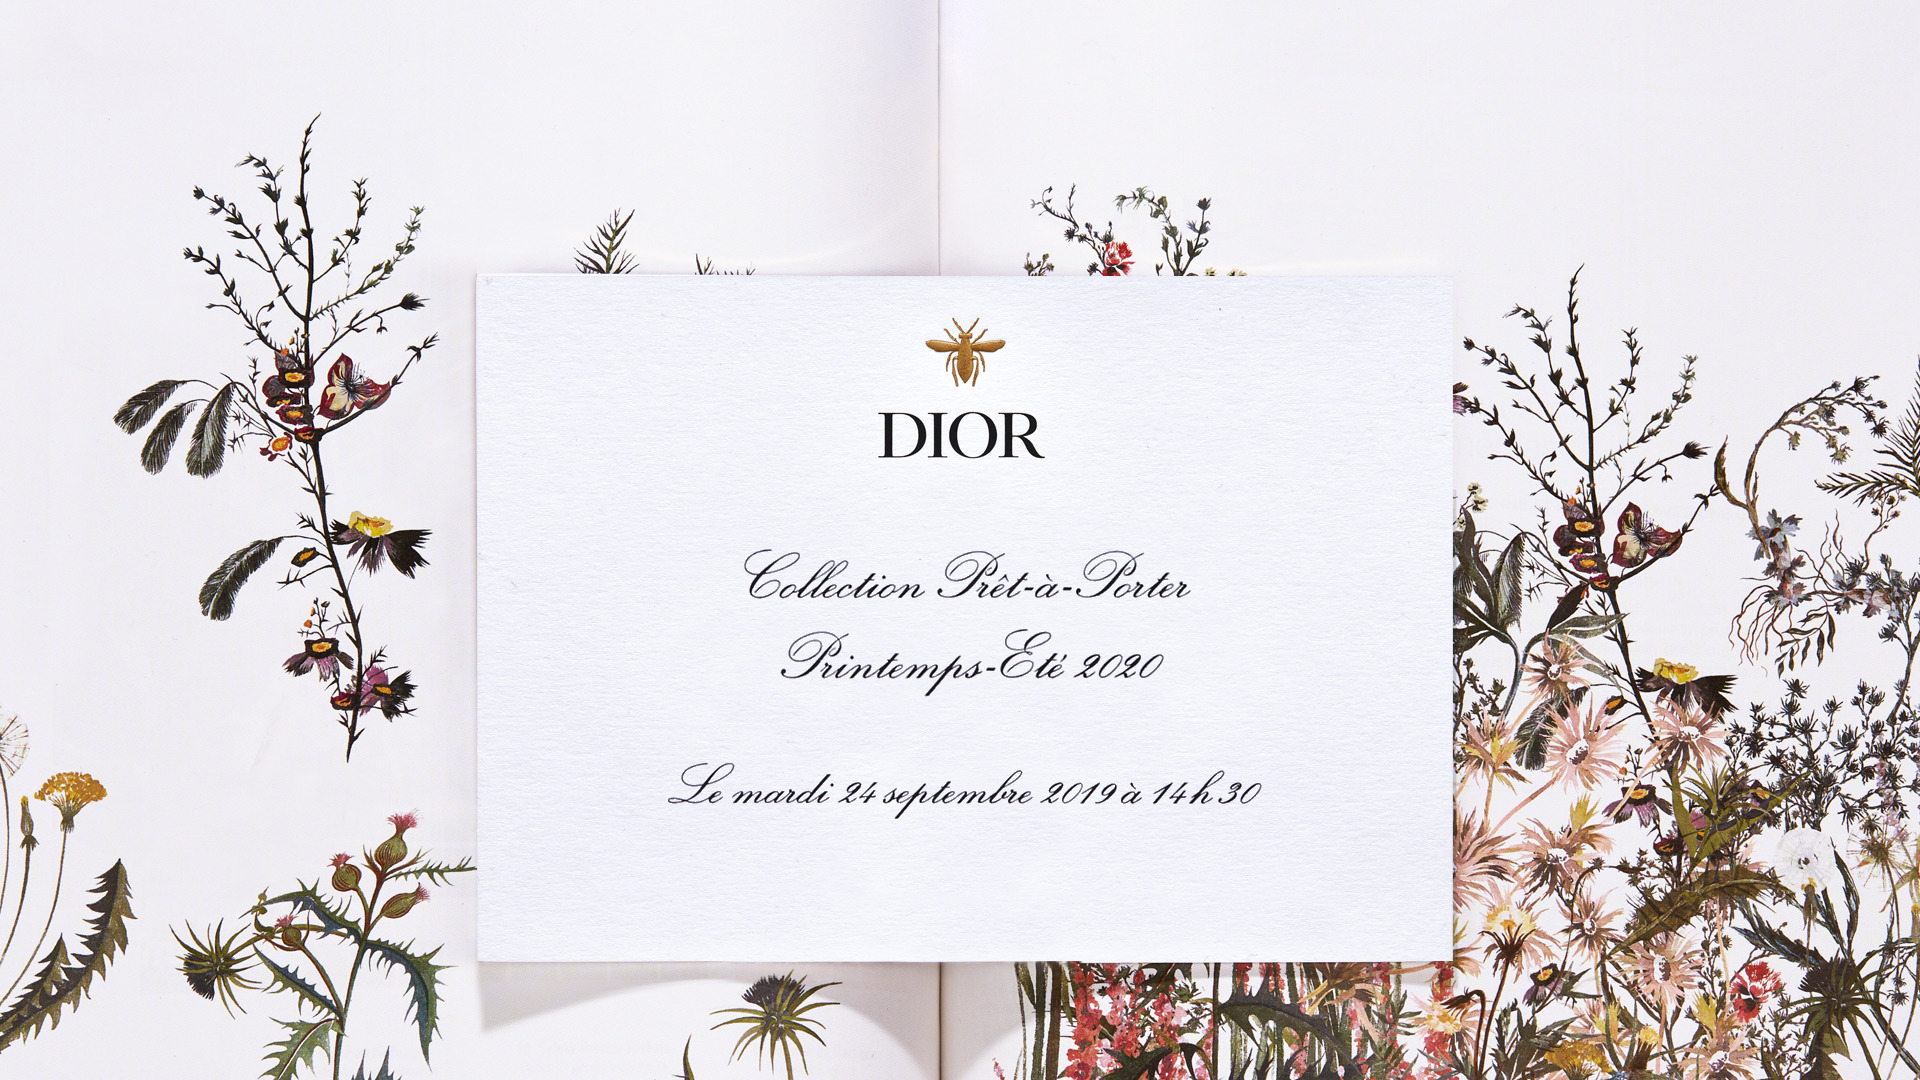 Canlı Yayın: Dior İlkbahar/Yaz 2020 Defilesi